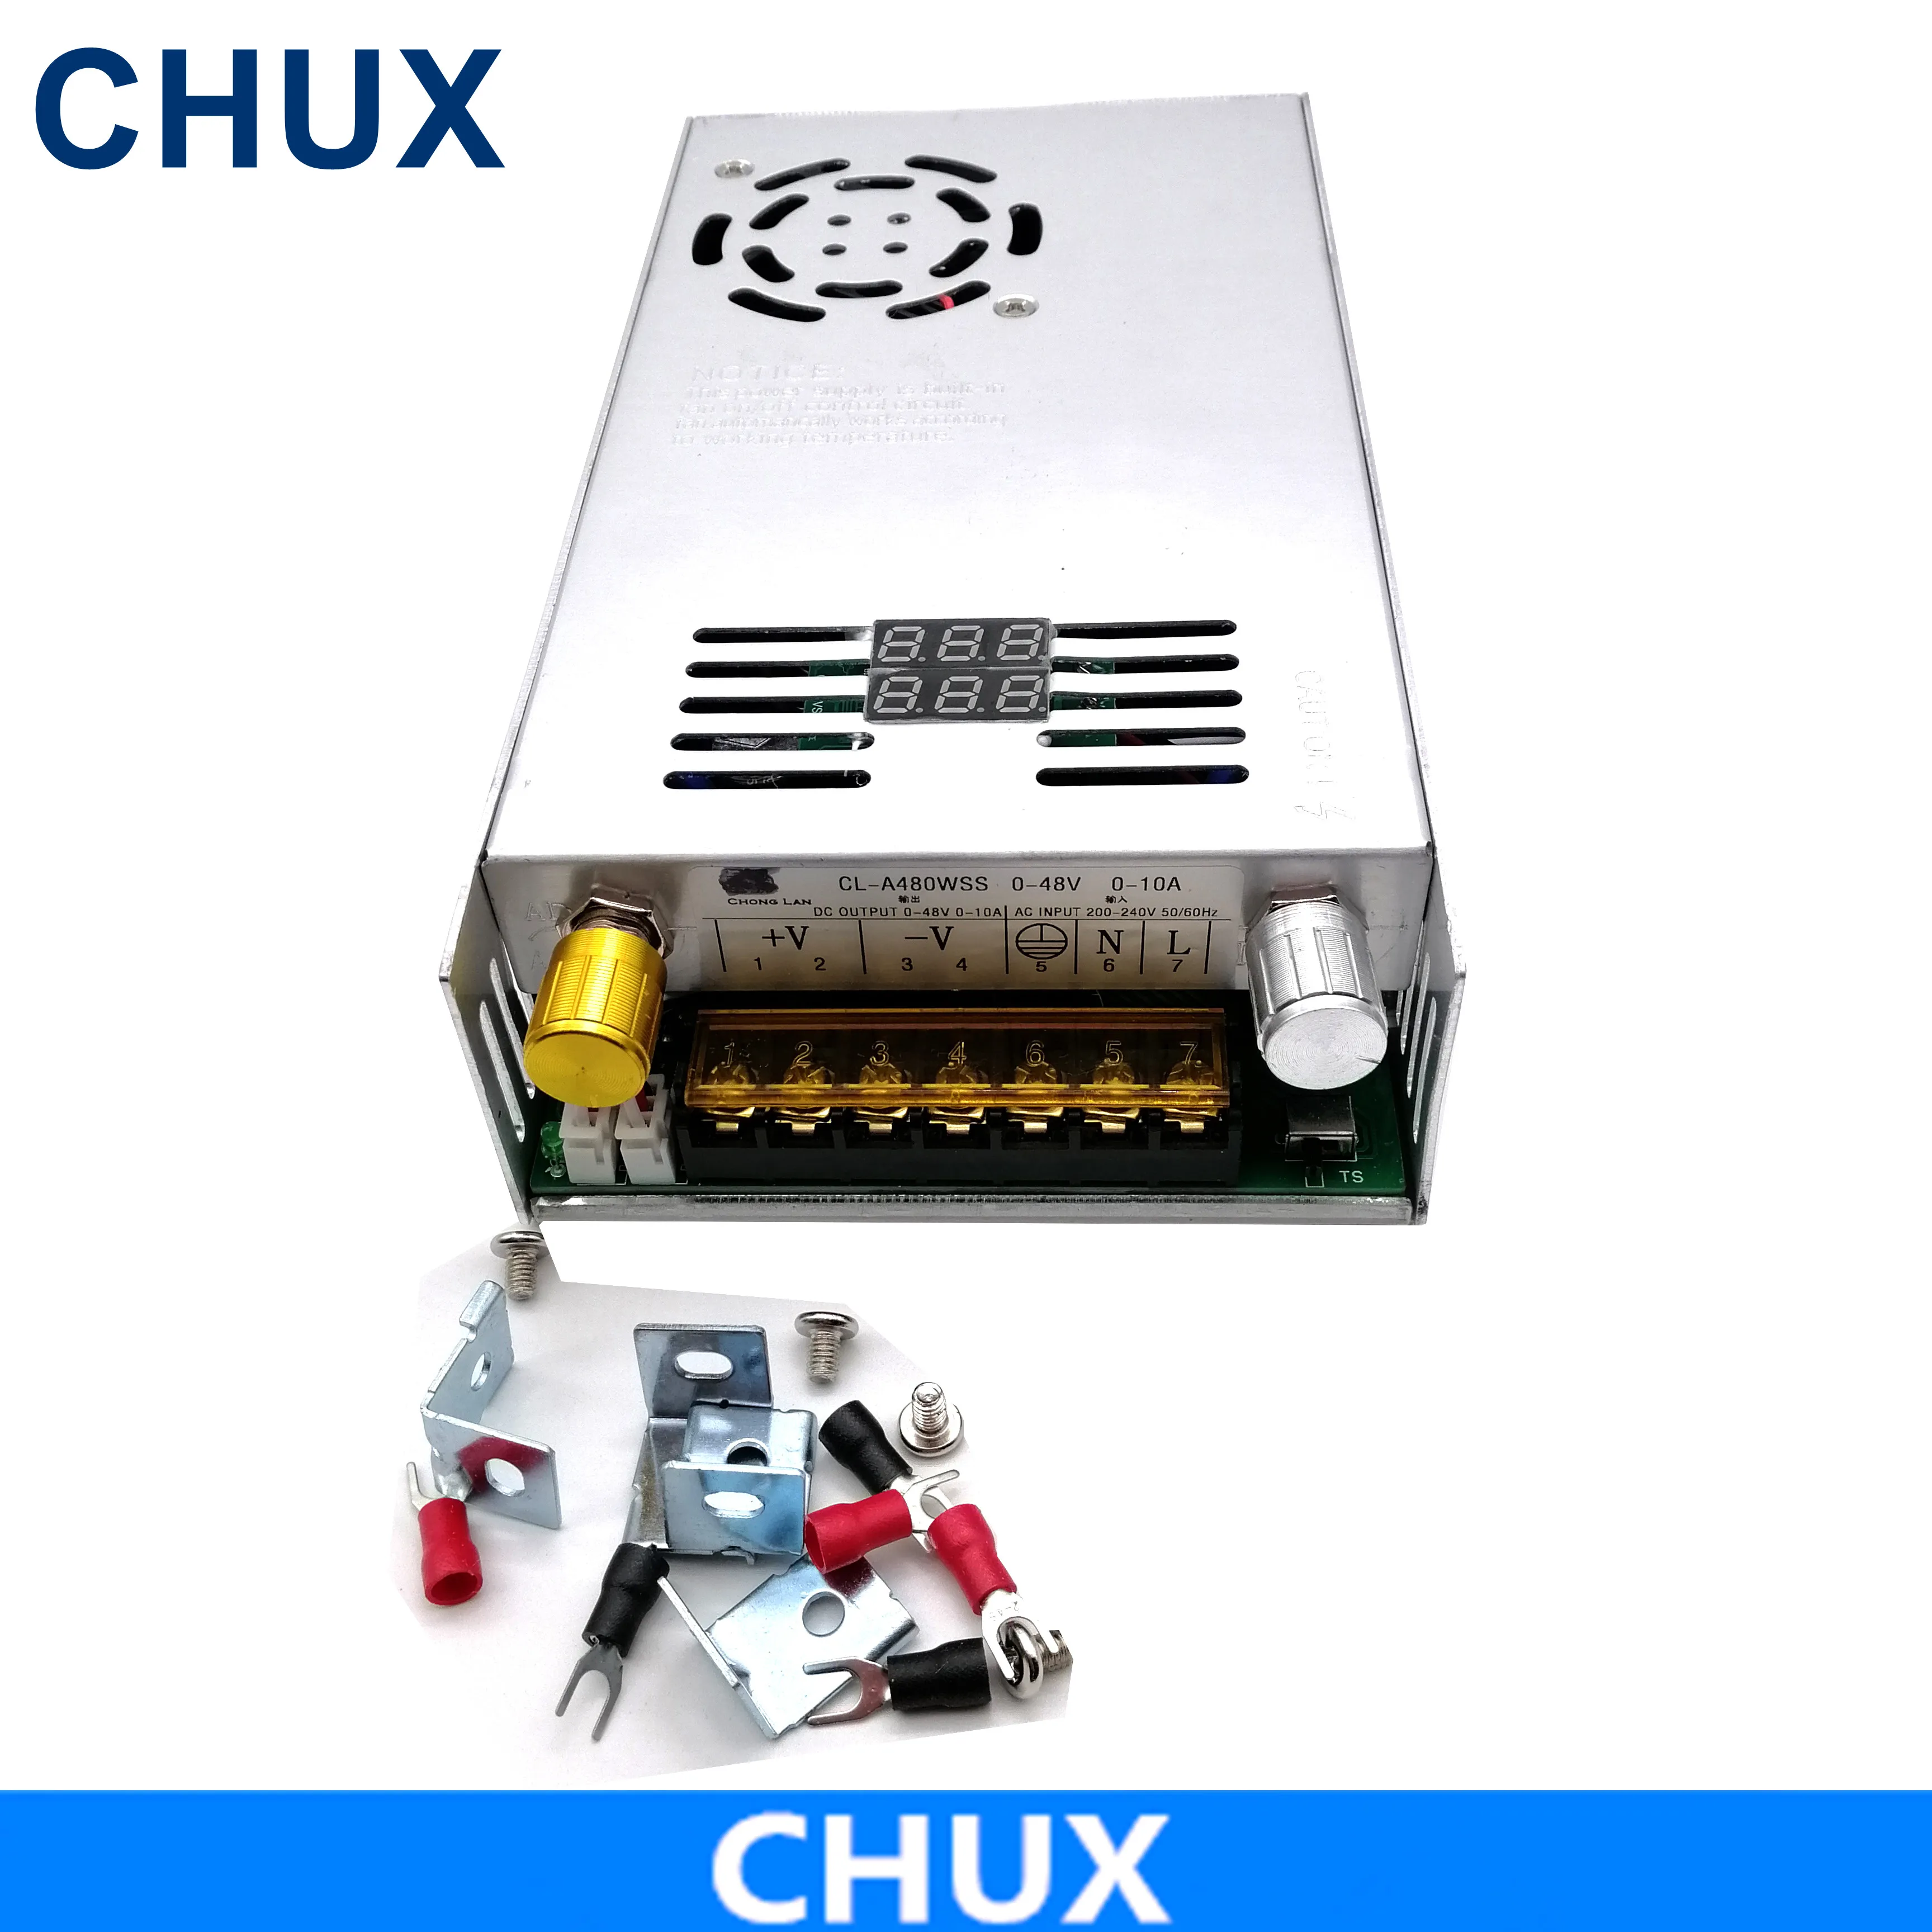 CHUX 480W Alimentation de commutation réglable avec alimentation numérique Alimentation pour LED DC 0-15V 24V 27V 26V 36V 48V 80V 60V